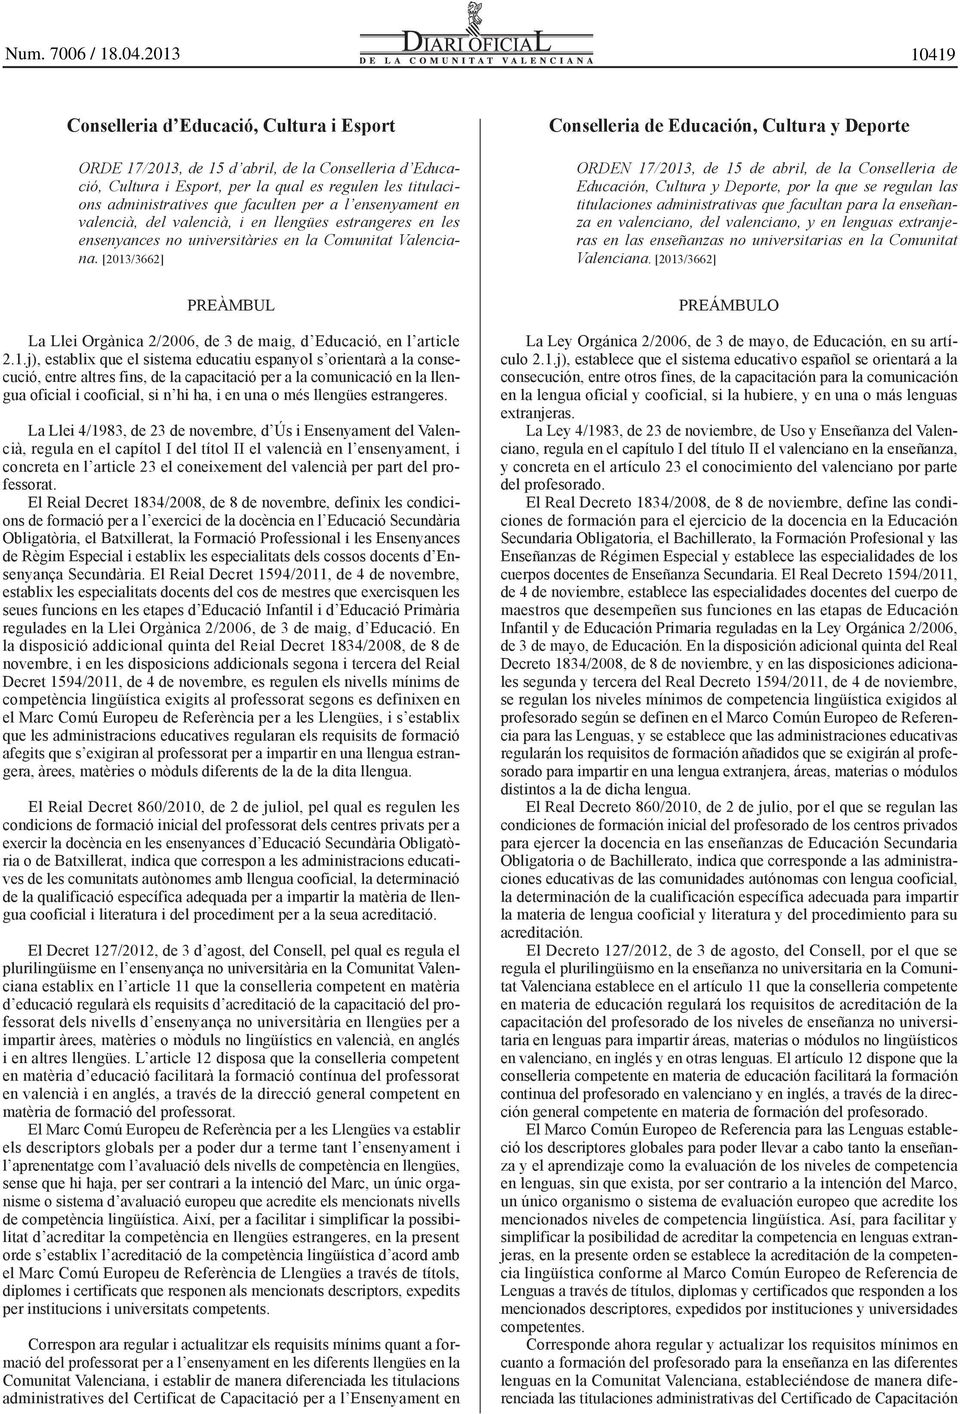 [2013/3662] PREÀMBUL La Llei Orgànica 2/2006, de 3 de maig, d Educació, en l article 2.1.j), establix que el sistema educatiu espanyol s orientarà a la consecució, entre altres fins, de la